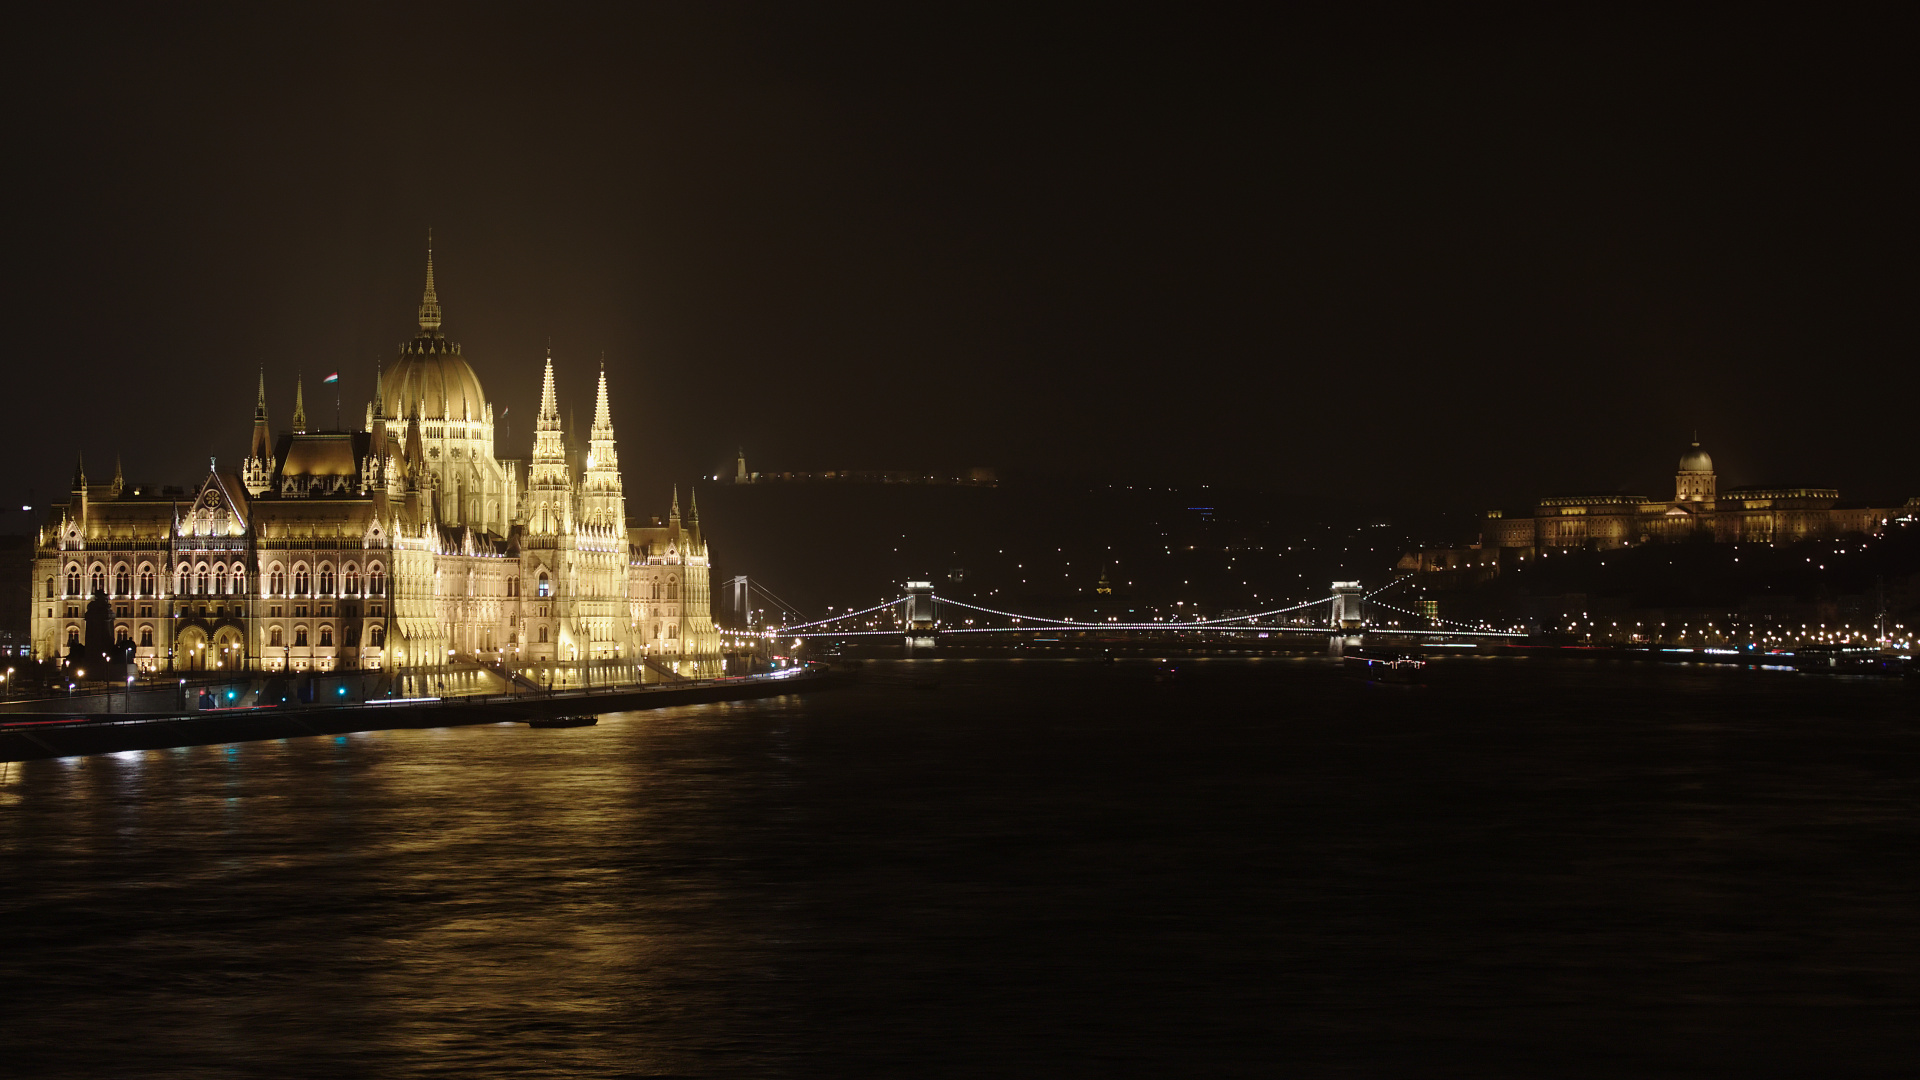 Dunaj, Parlament, Most łańcuchowy Széchenyiego i Zamek Królewski (Podróże » Budapeszt » Budapeszt w nocy)